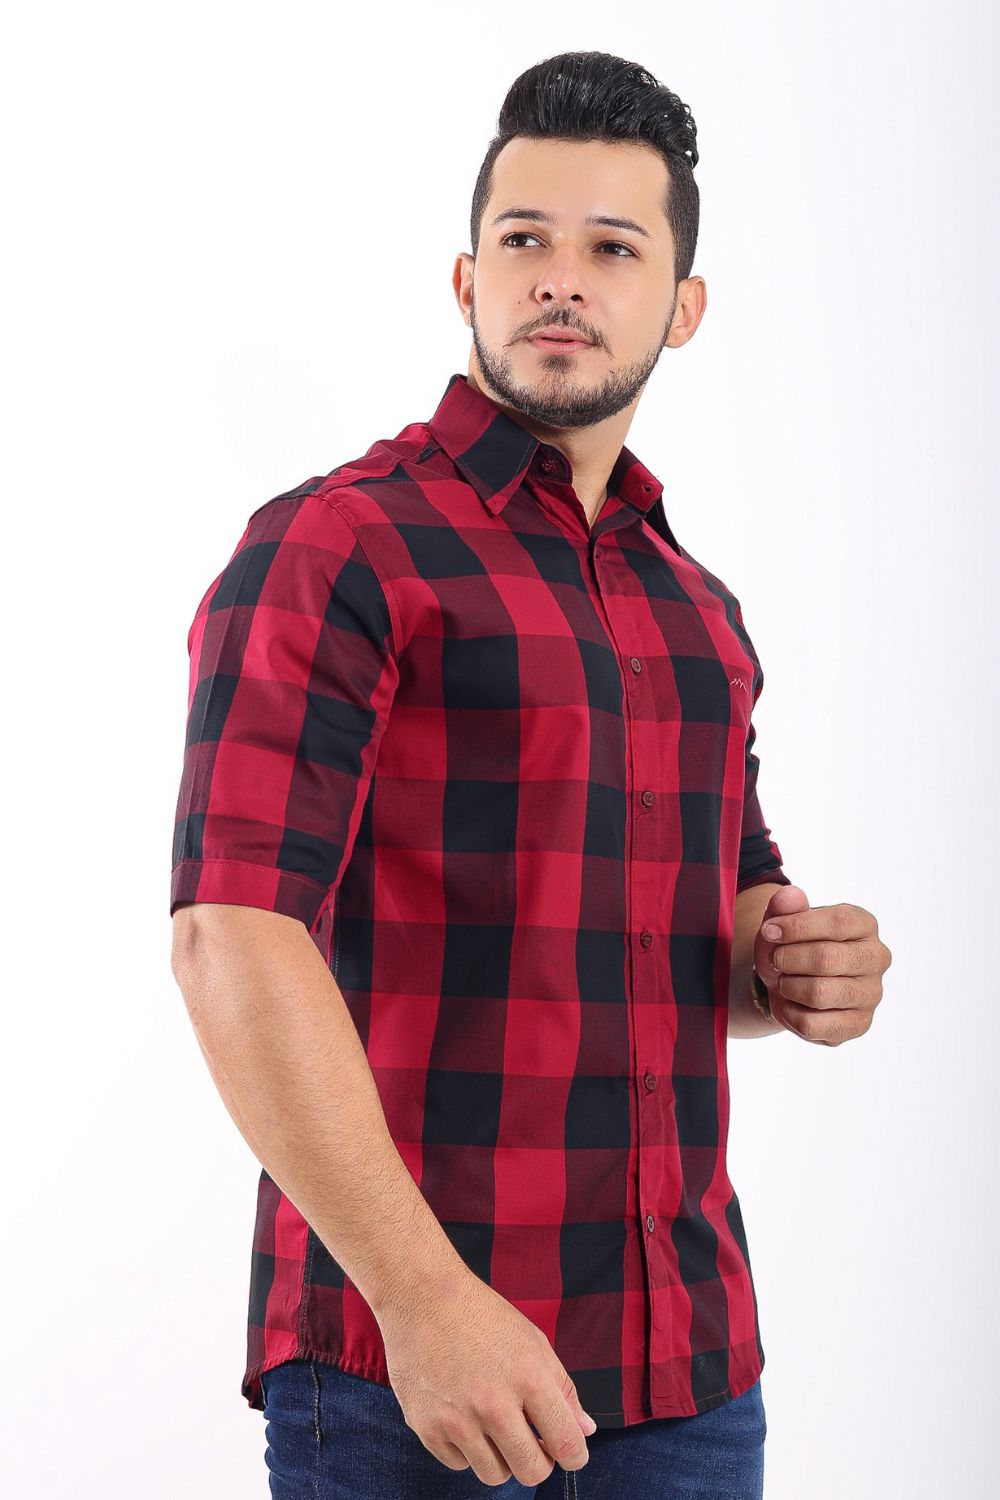 Camisa xadrez masculina 100% algodão fio 50 - Rolca Camisaria - as melhores  tendência de camisas e camisetas.